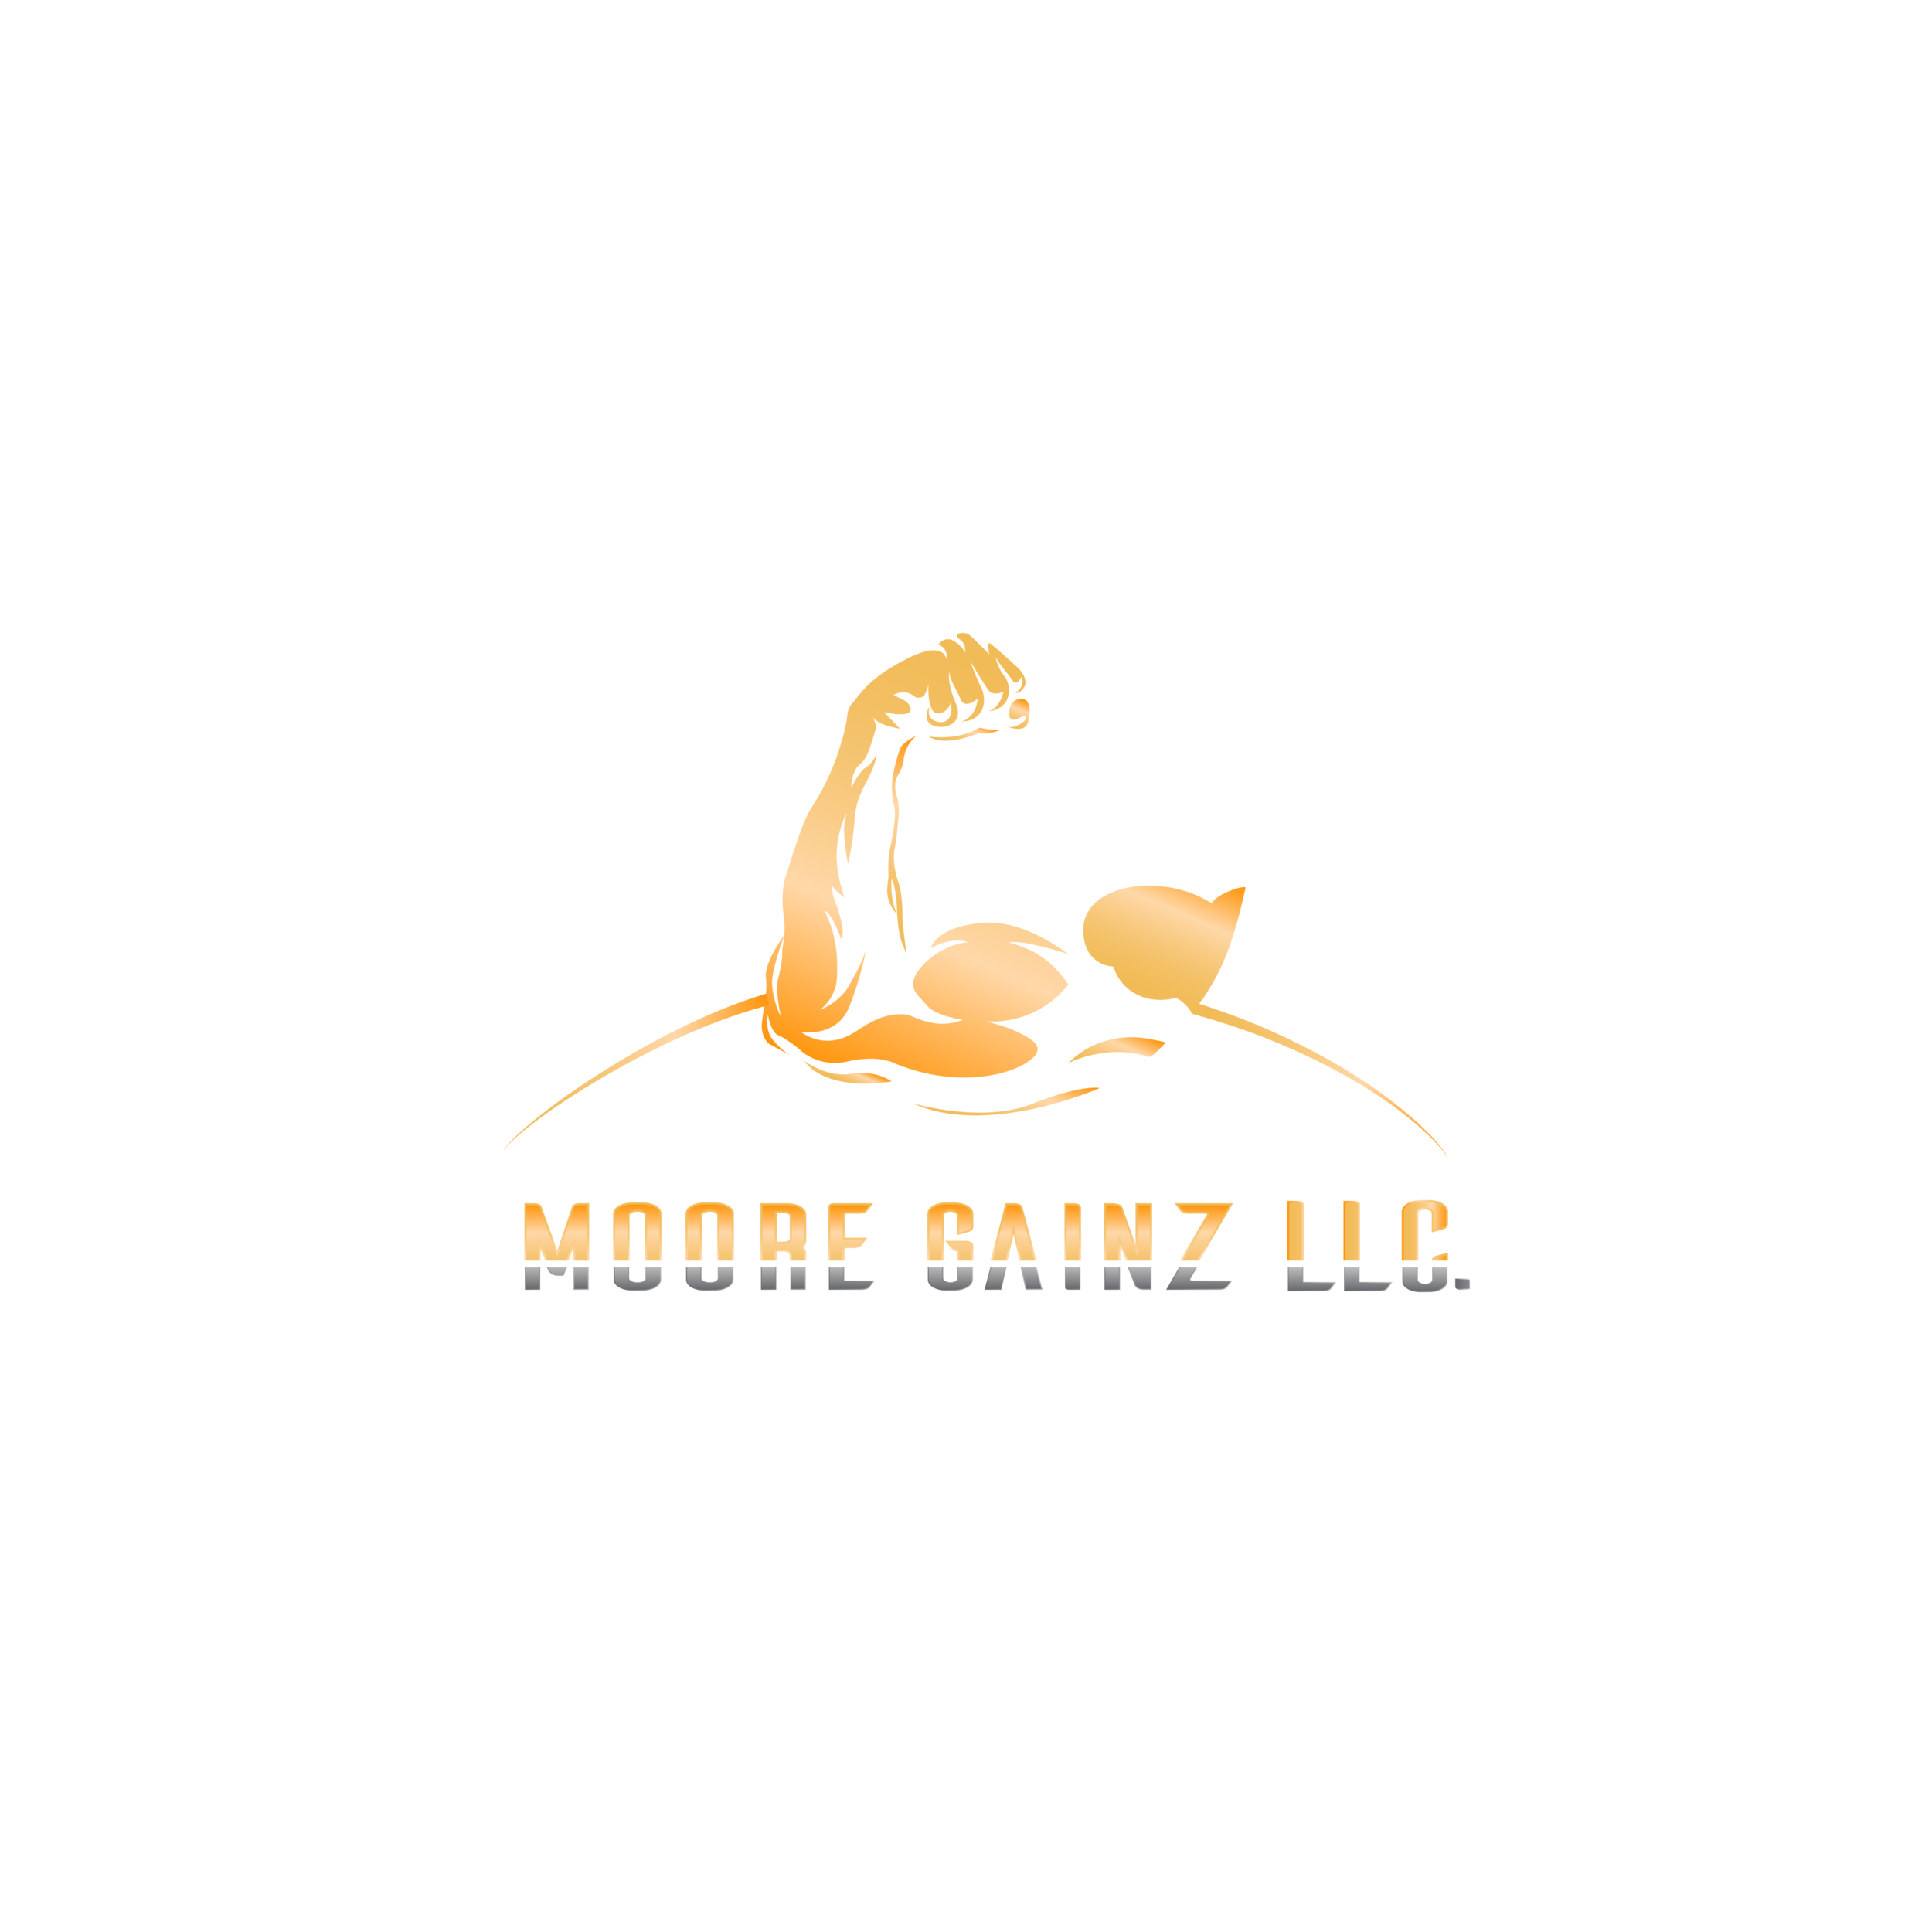 Moore Gainz LLC. 